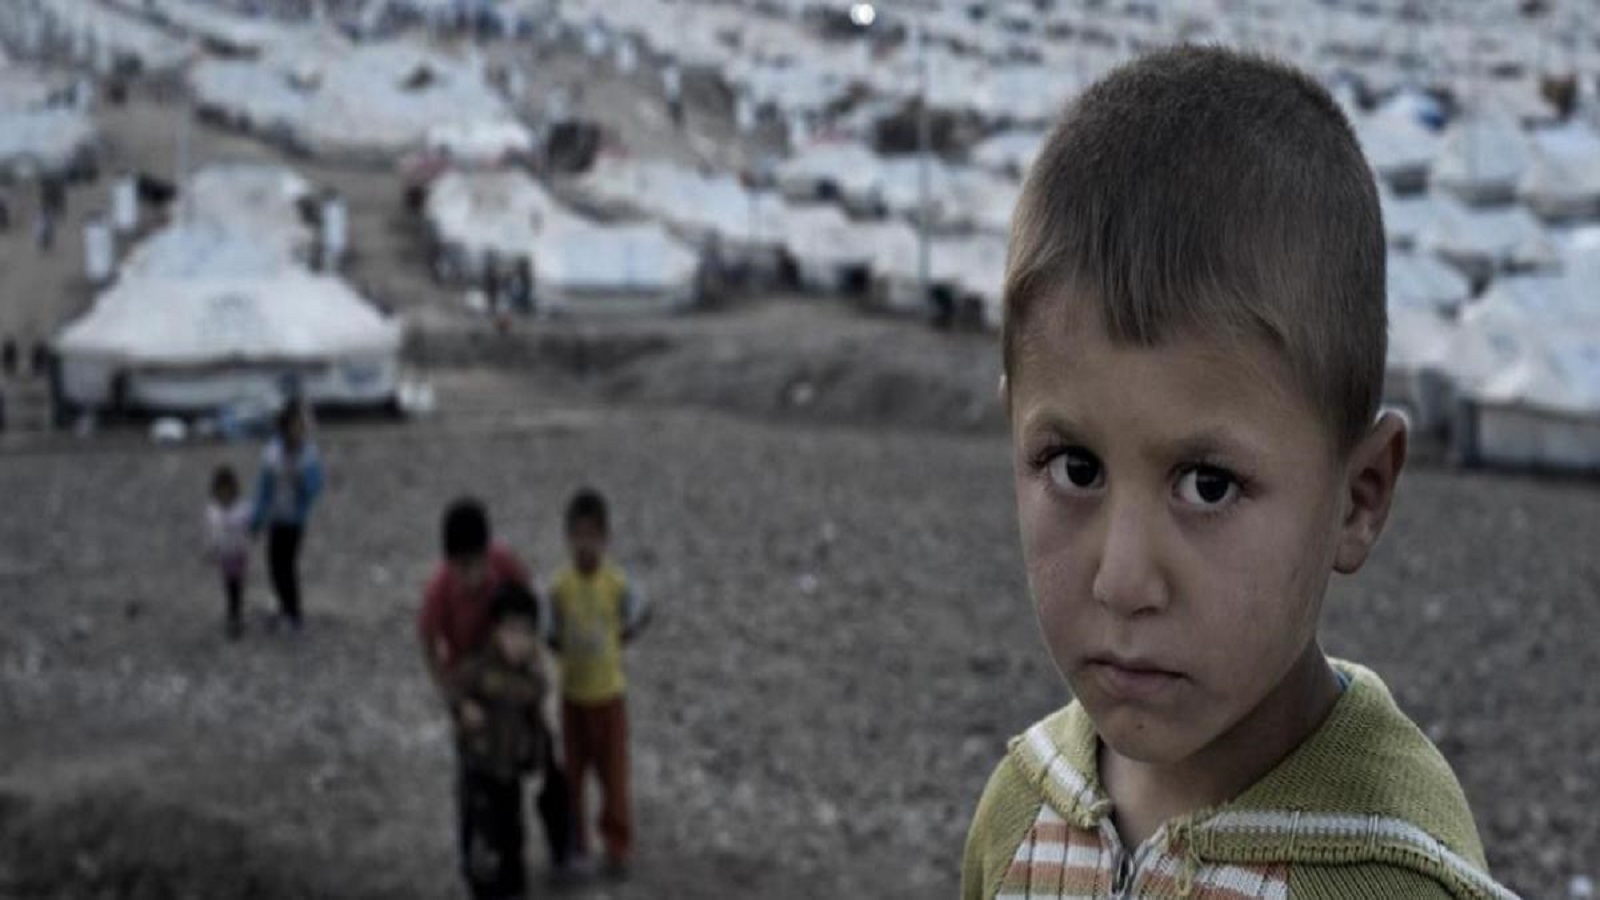 "شبحية" الأطفال السوريين في أوروبا وضياعهم